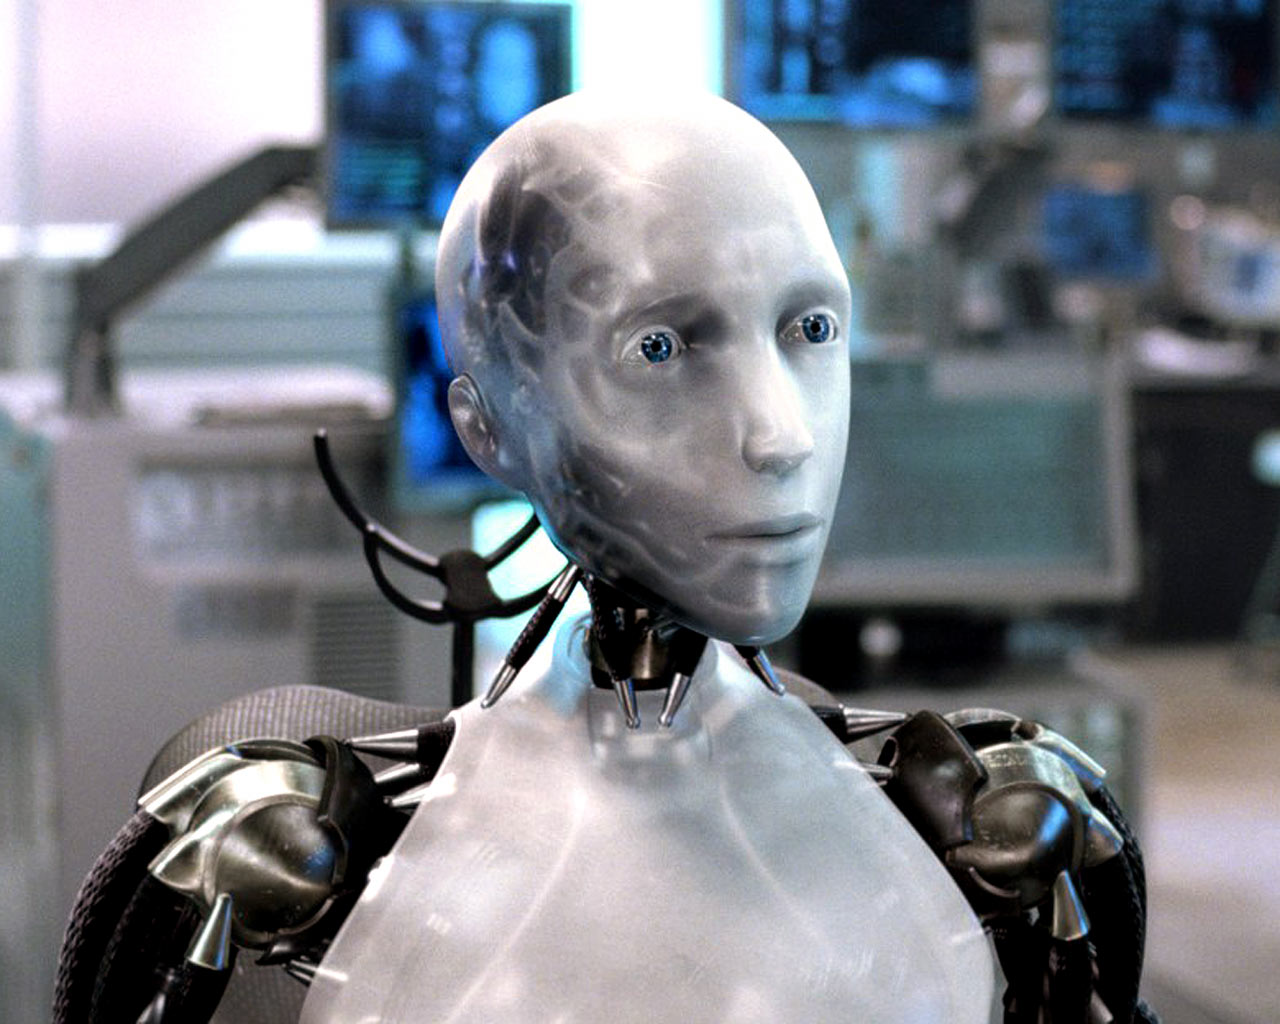 Als robots zelf mochten solliciteren, zouden ze dan voor mij willen werken?